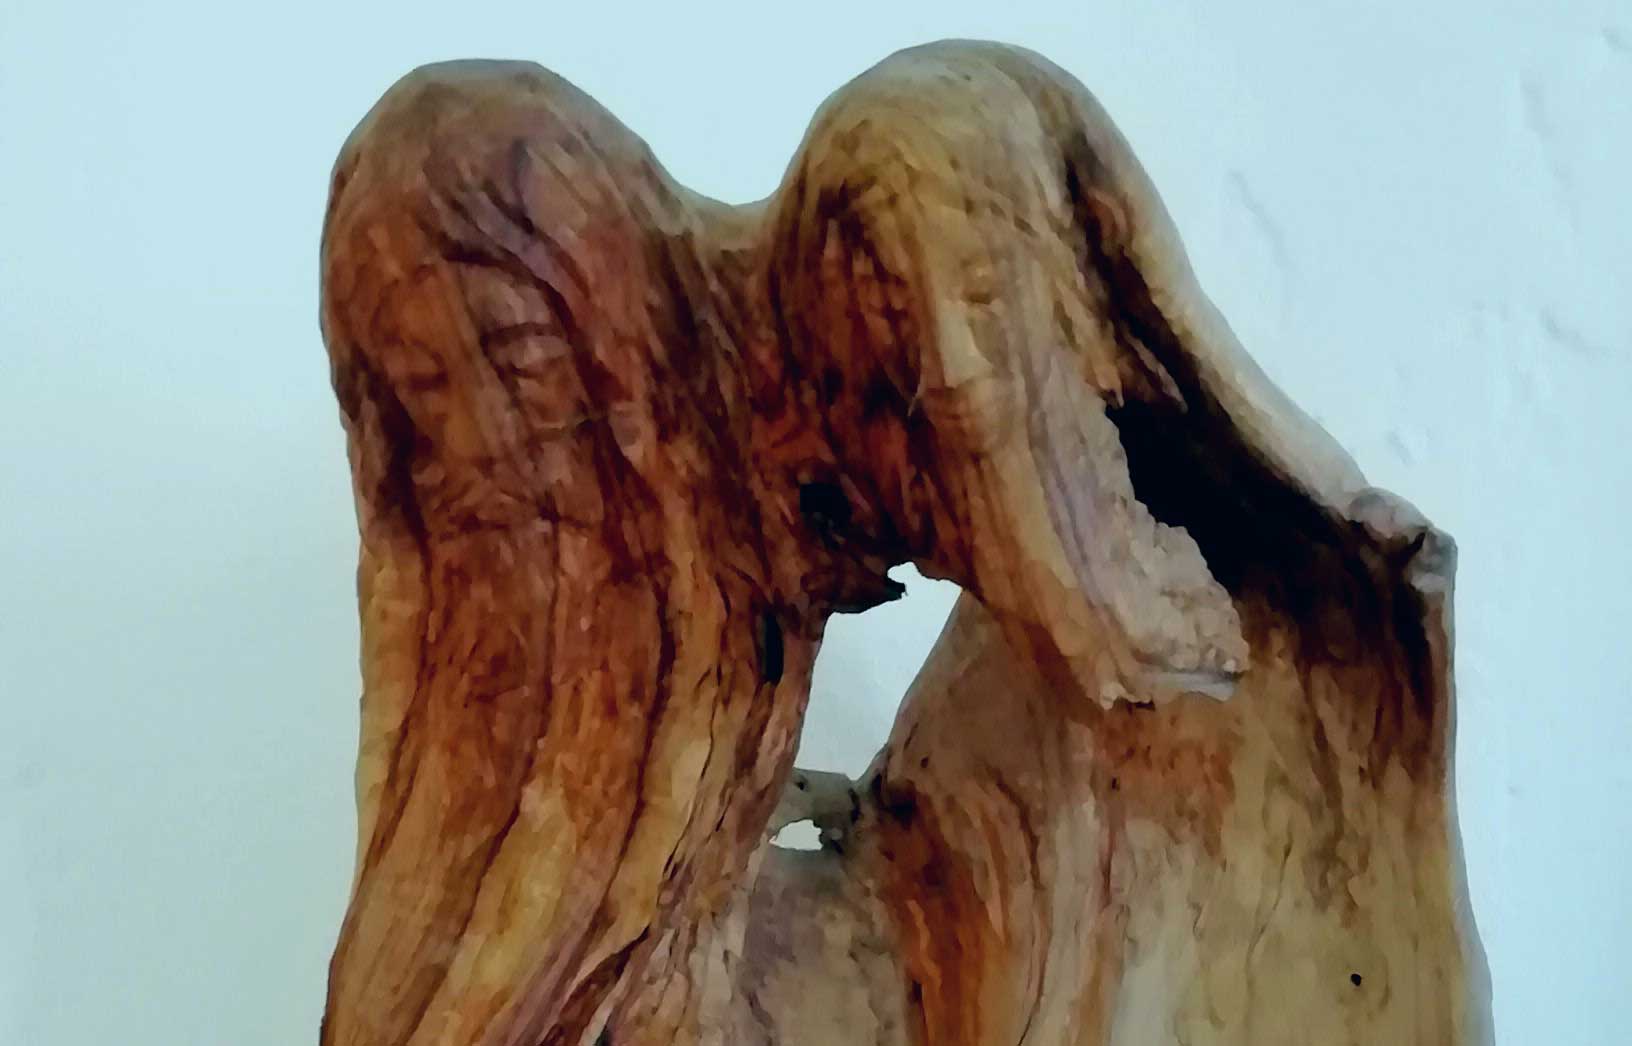 Immagini delle sculture in legno di Stephen Savioli